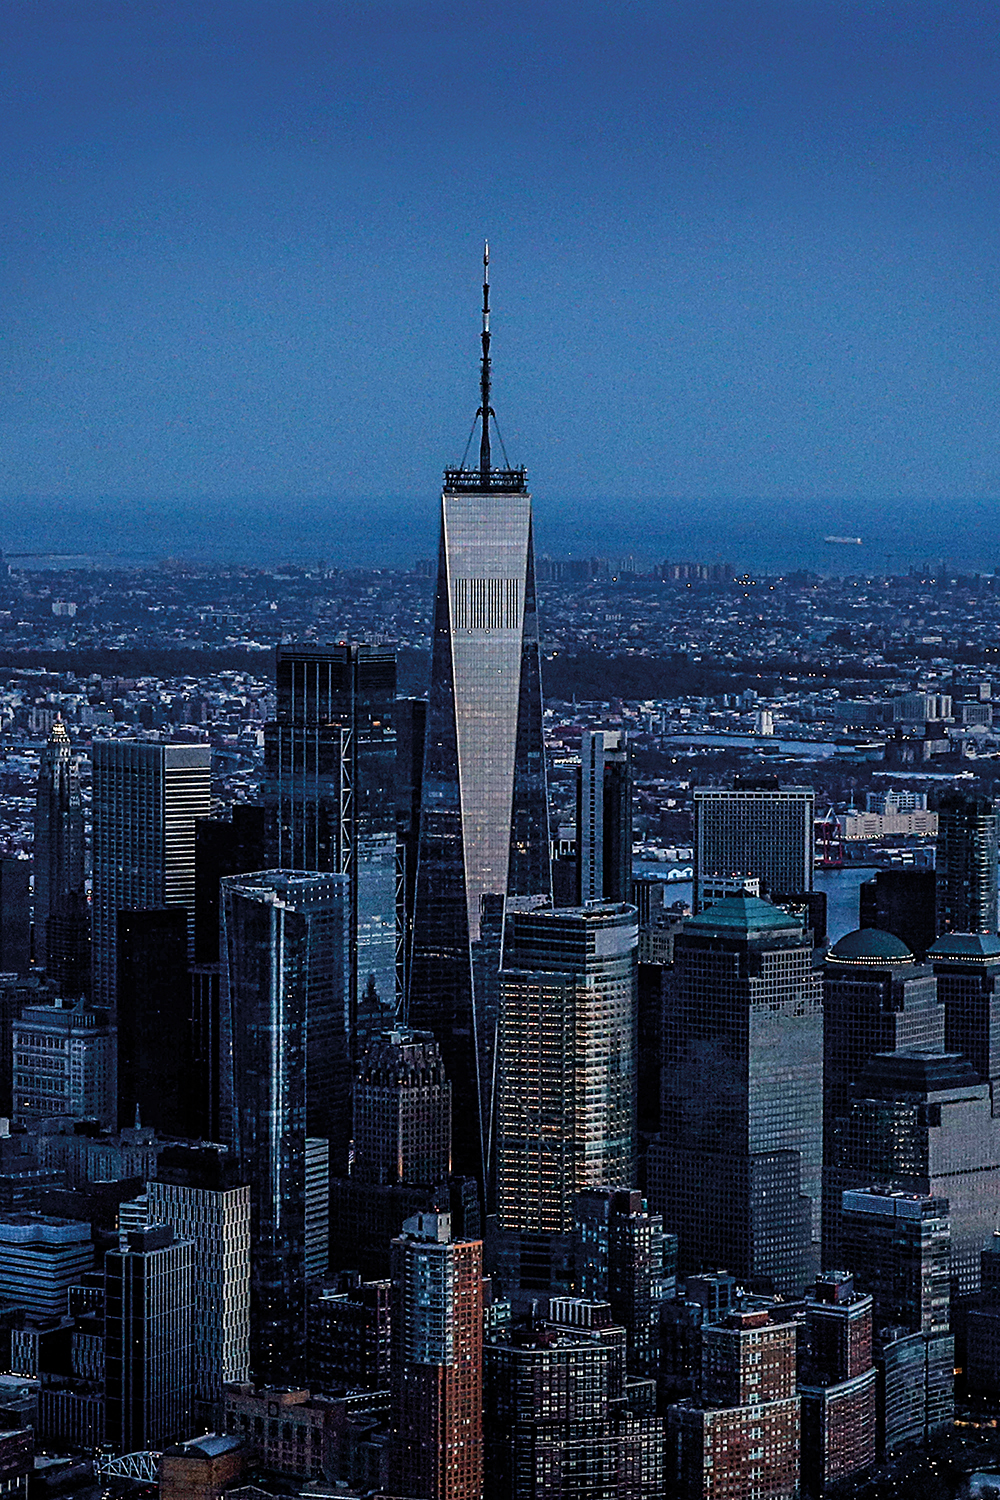 Vista aérea do centro financeiro de Nova York, com o 1WTC em destaque